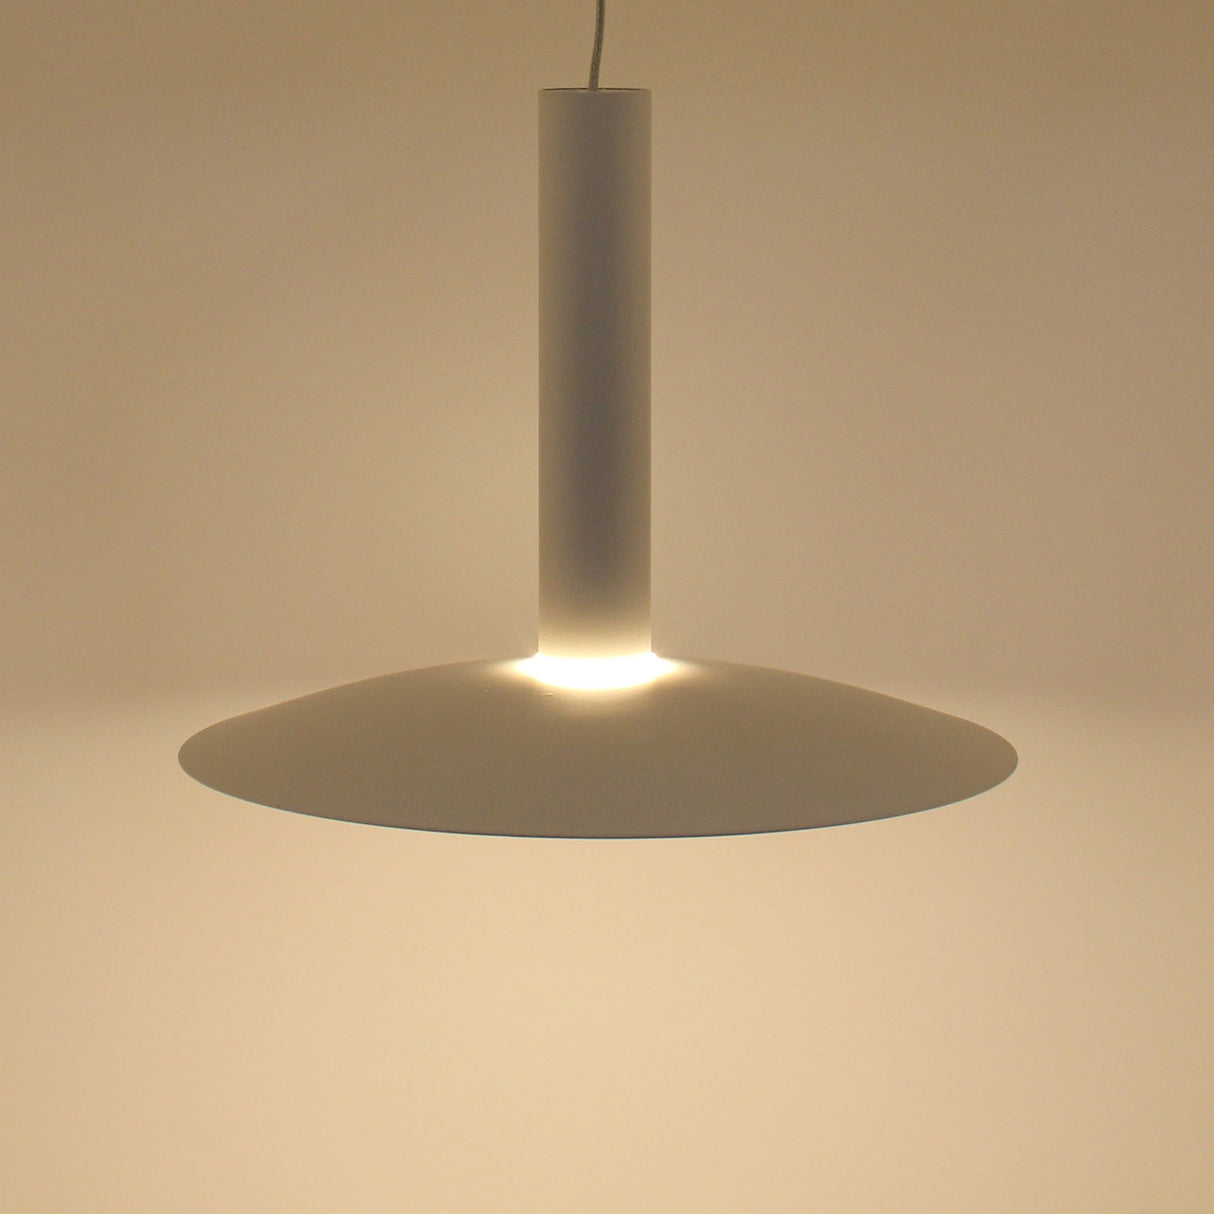 La Lámpara Colgante led CONE combina un diseño único y elegante con unos acabados de máxima calidad. Este tipo de lámparas de diseño nos permiten dar ese toque colorido que aportará personalidad a cualquier espacio convirtiéndolo en algo único.